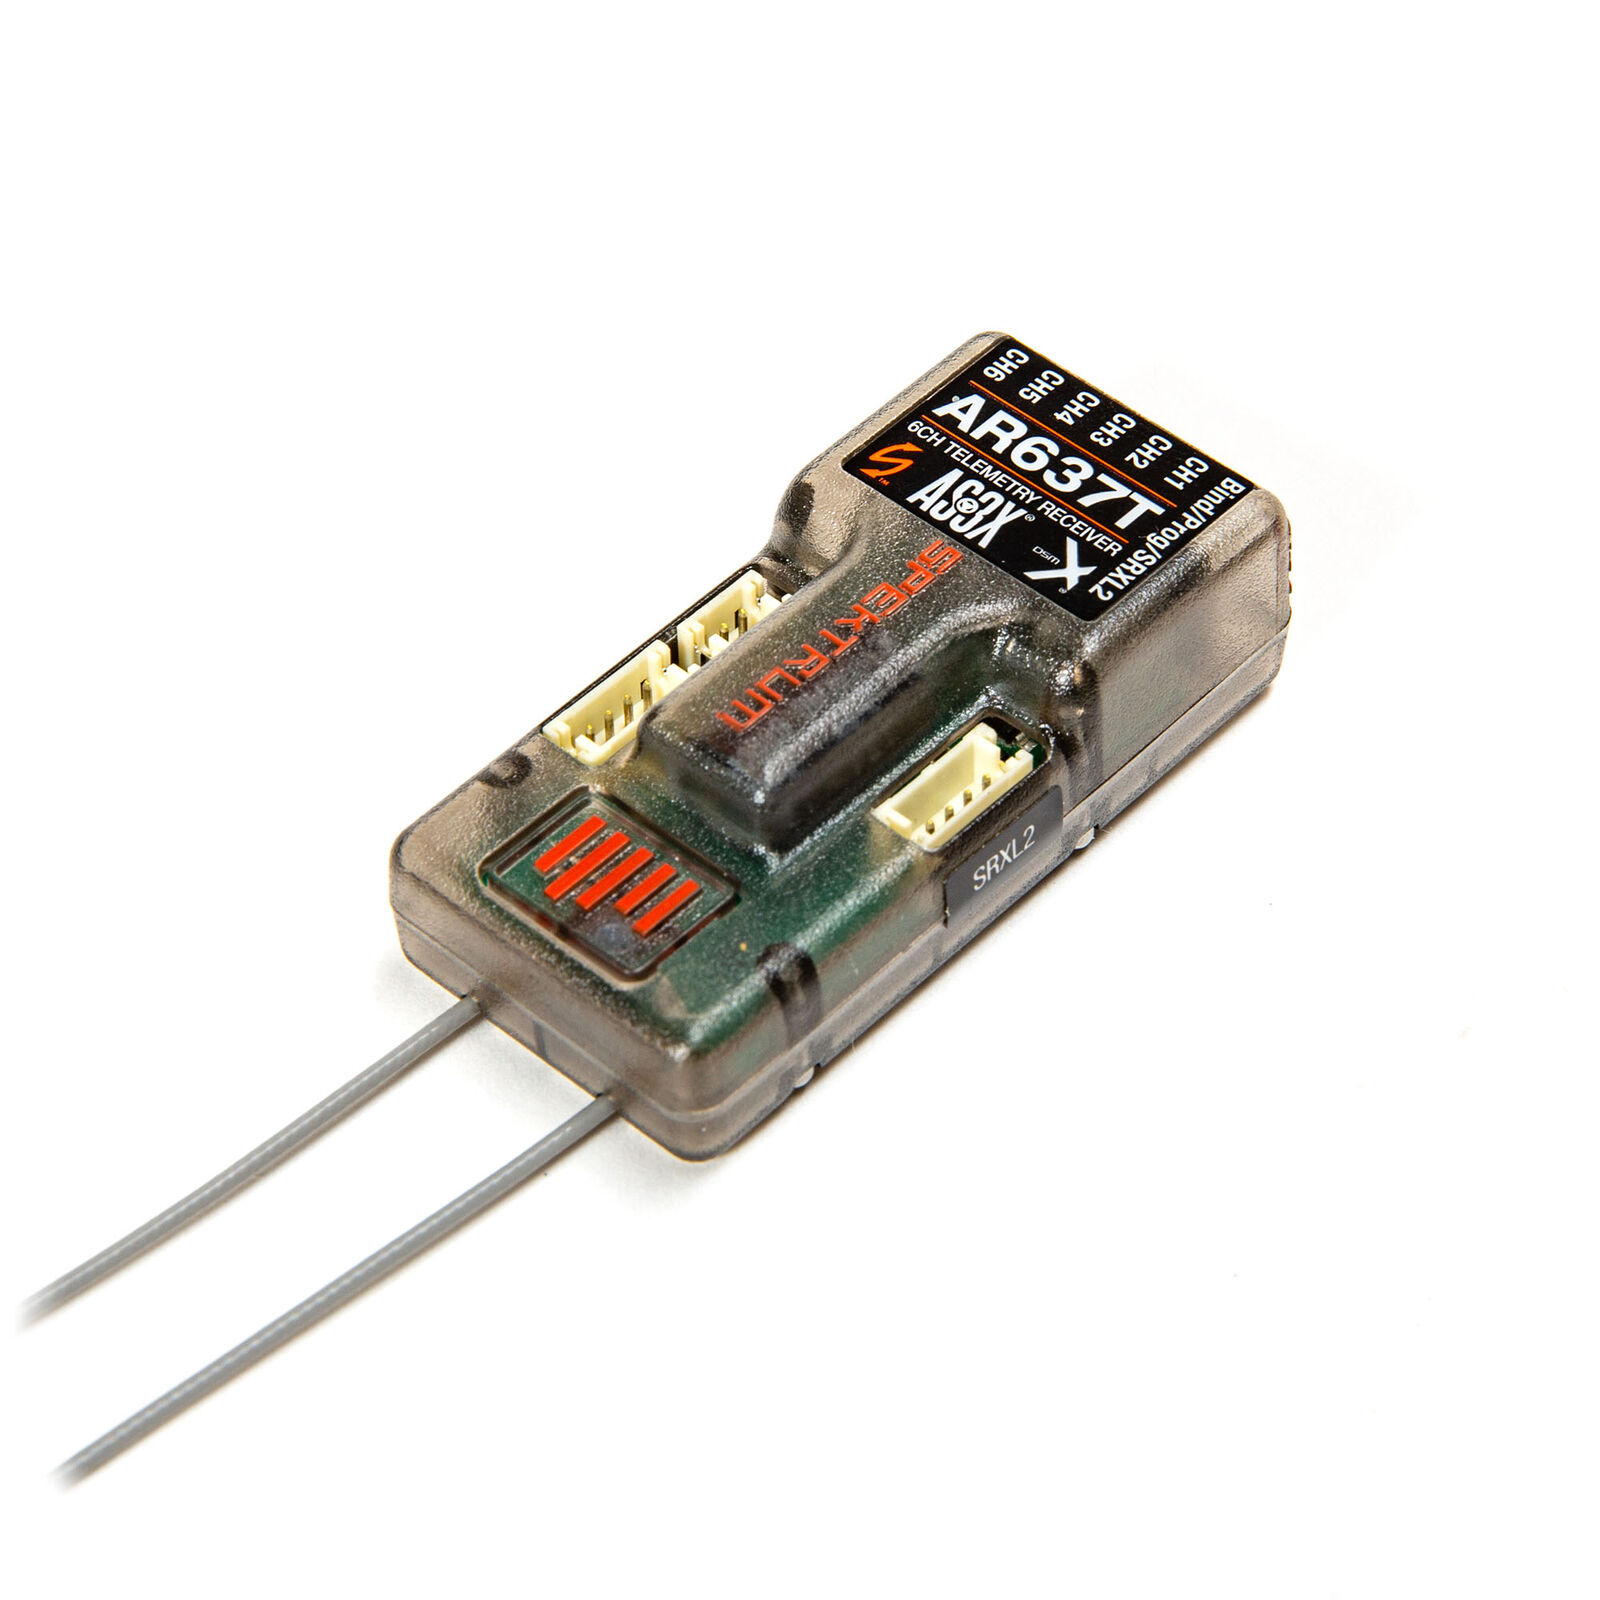 AR637T 6 Channel AS3X Telemetry Receiver (SPMAR637T) inkl. Vario kompatibel zu DSMX und DSM2 Sendern